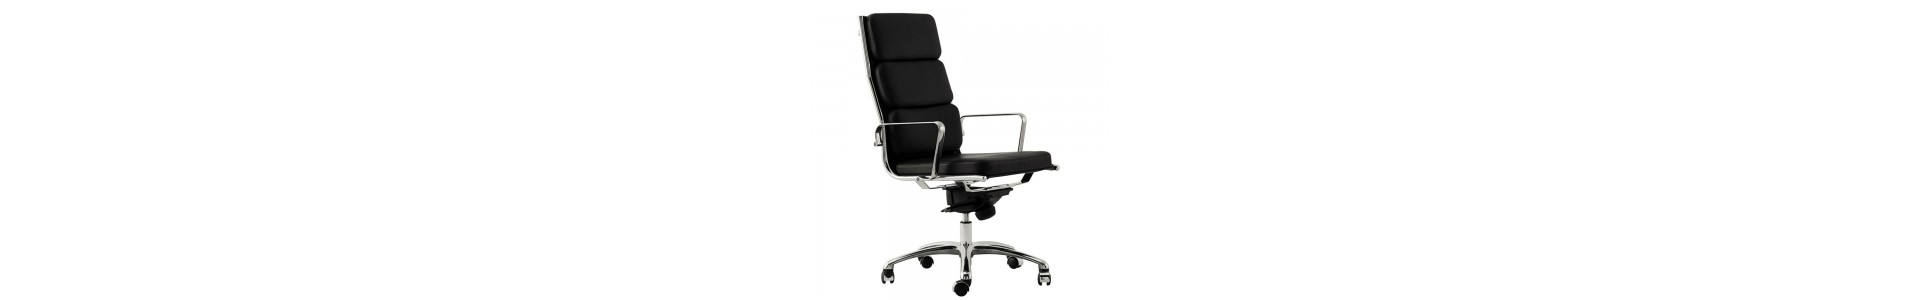 Sillas ejecutivas Luxy. Compra sillas ergonómicas de oficina. Sillas ejecutivas de diseño